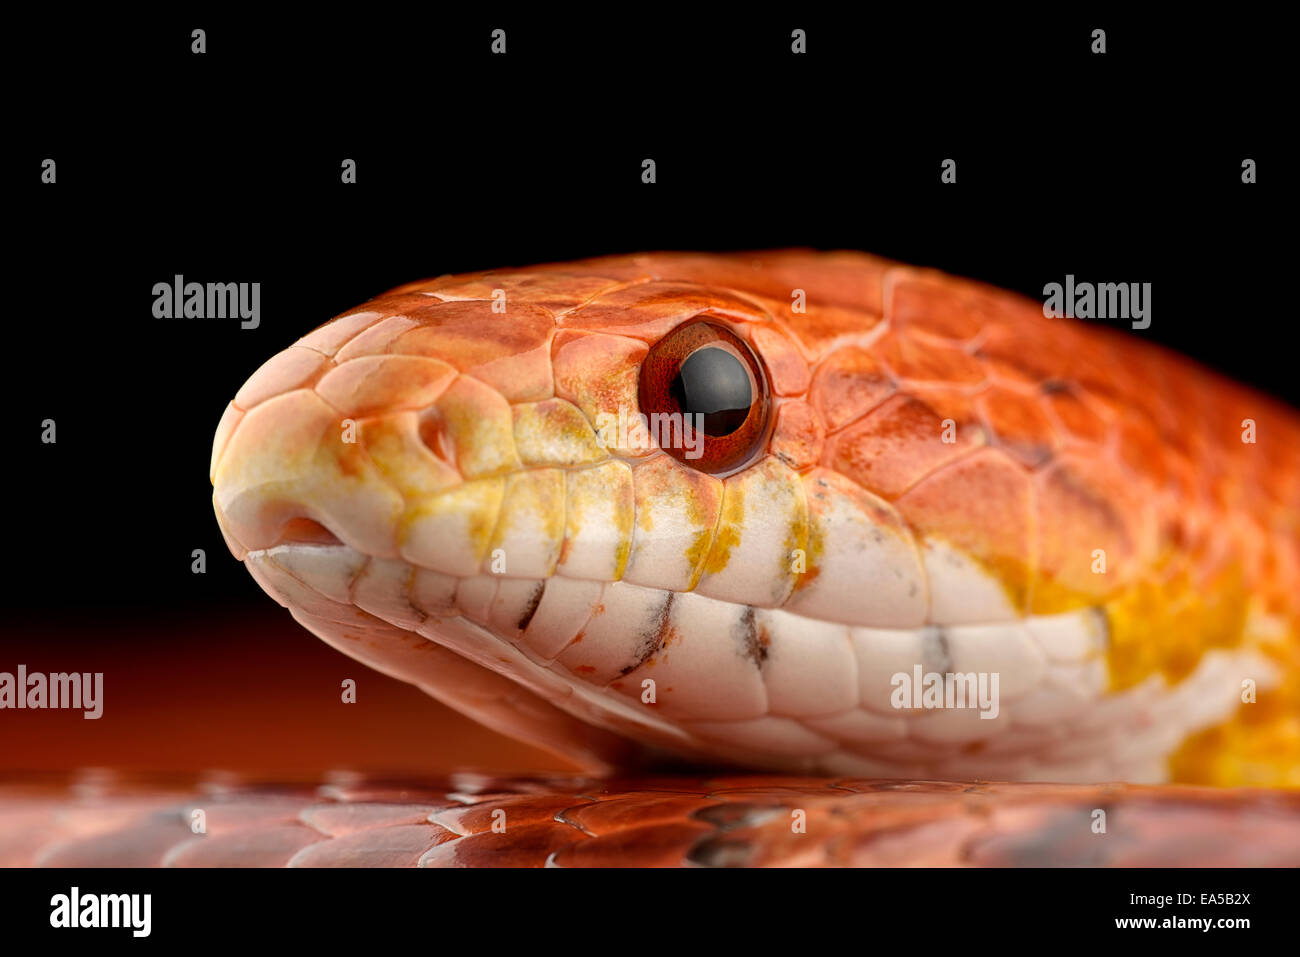 Head of corn snake, Pantherophis guttatus Stock Photo